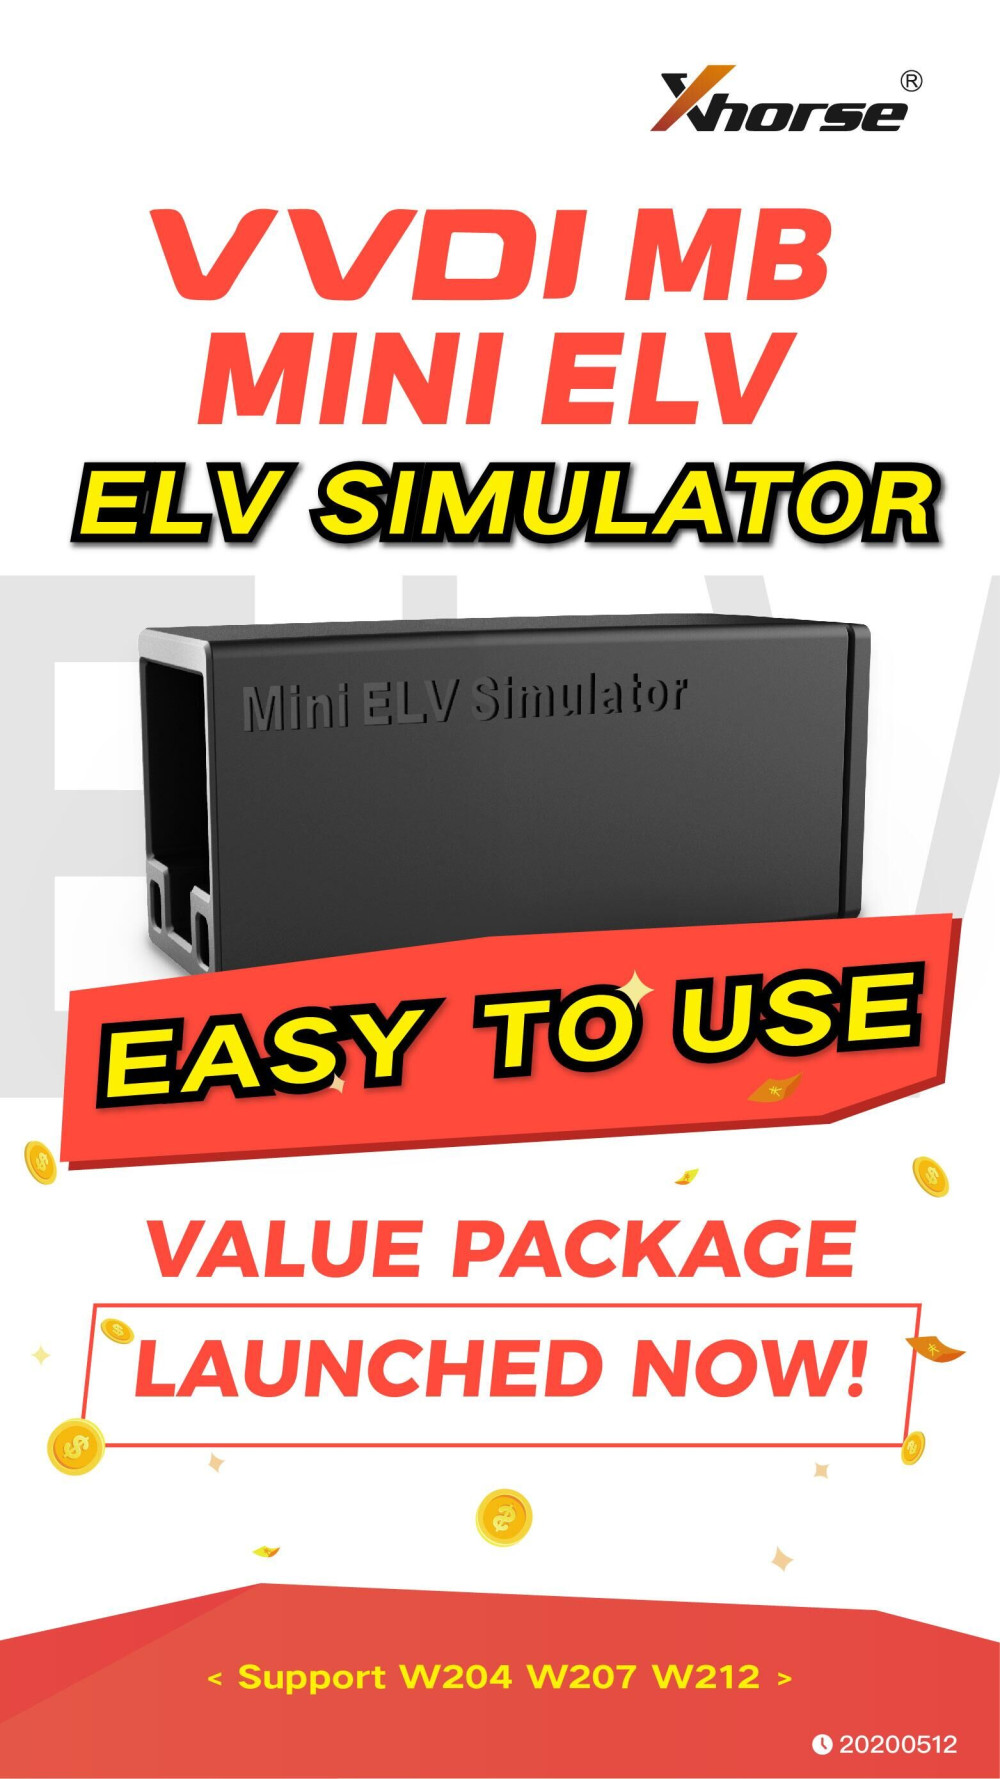 VVDI MB MINI ELV Emulator